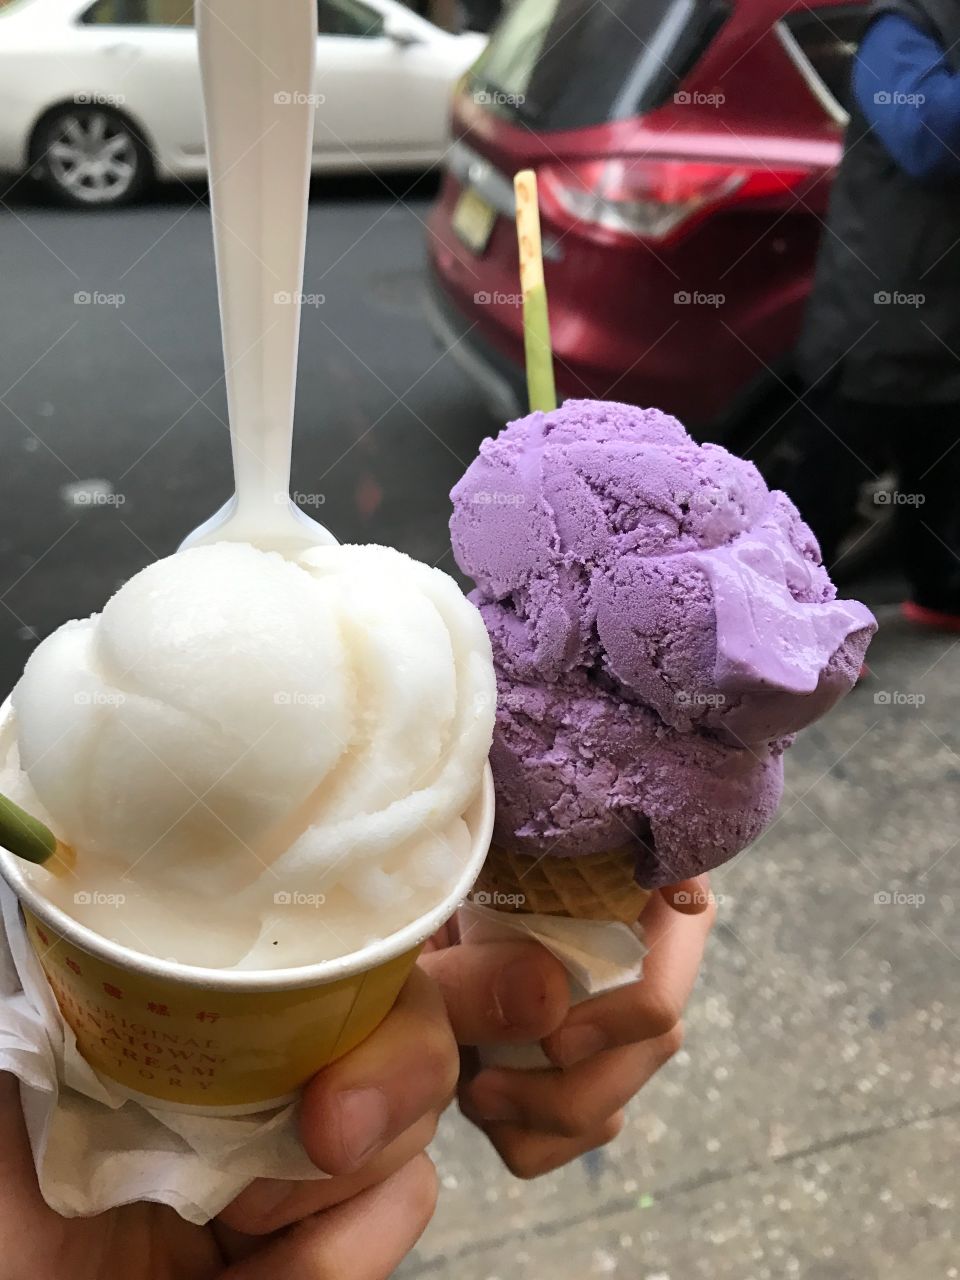 Lychee sorbet and taro ice cream, Chinatown, NYC 